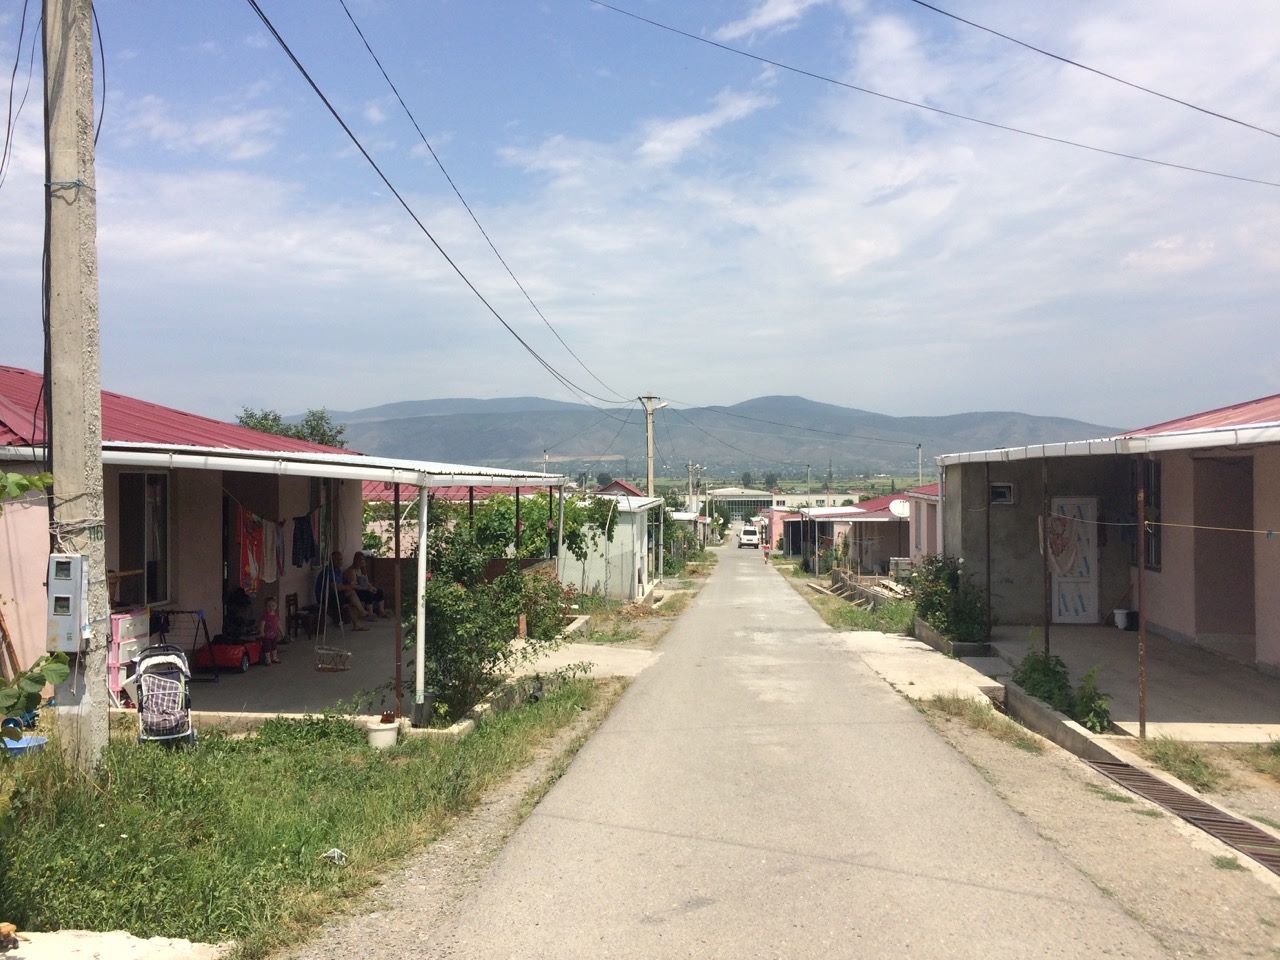 Inside the IDP re-settlement in Tserovani